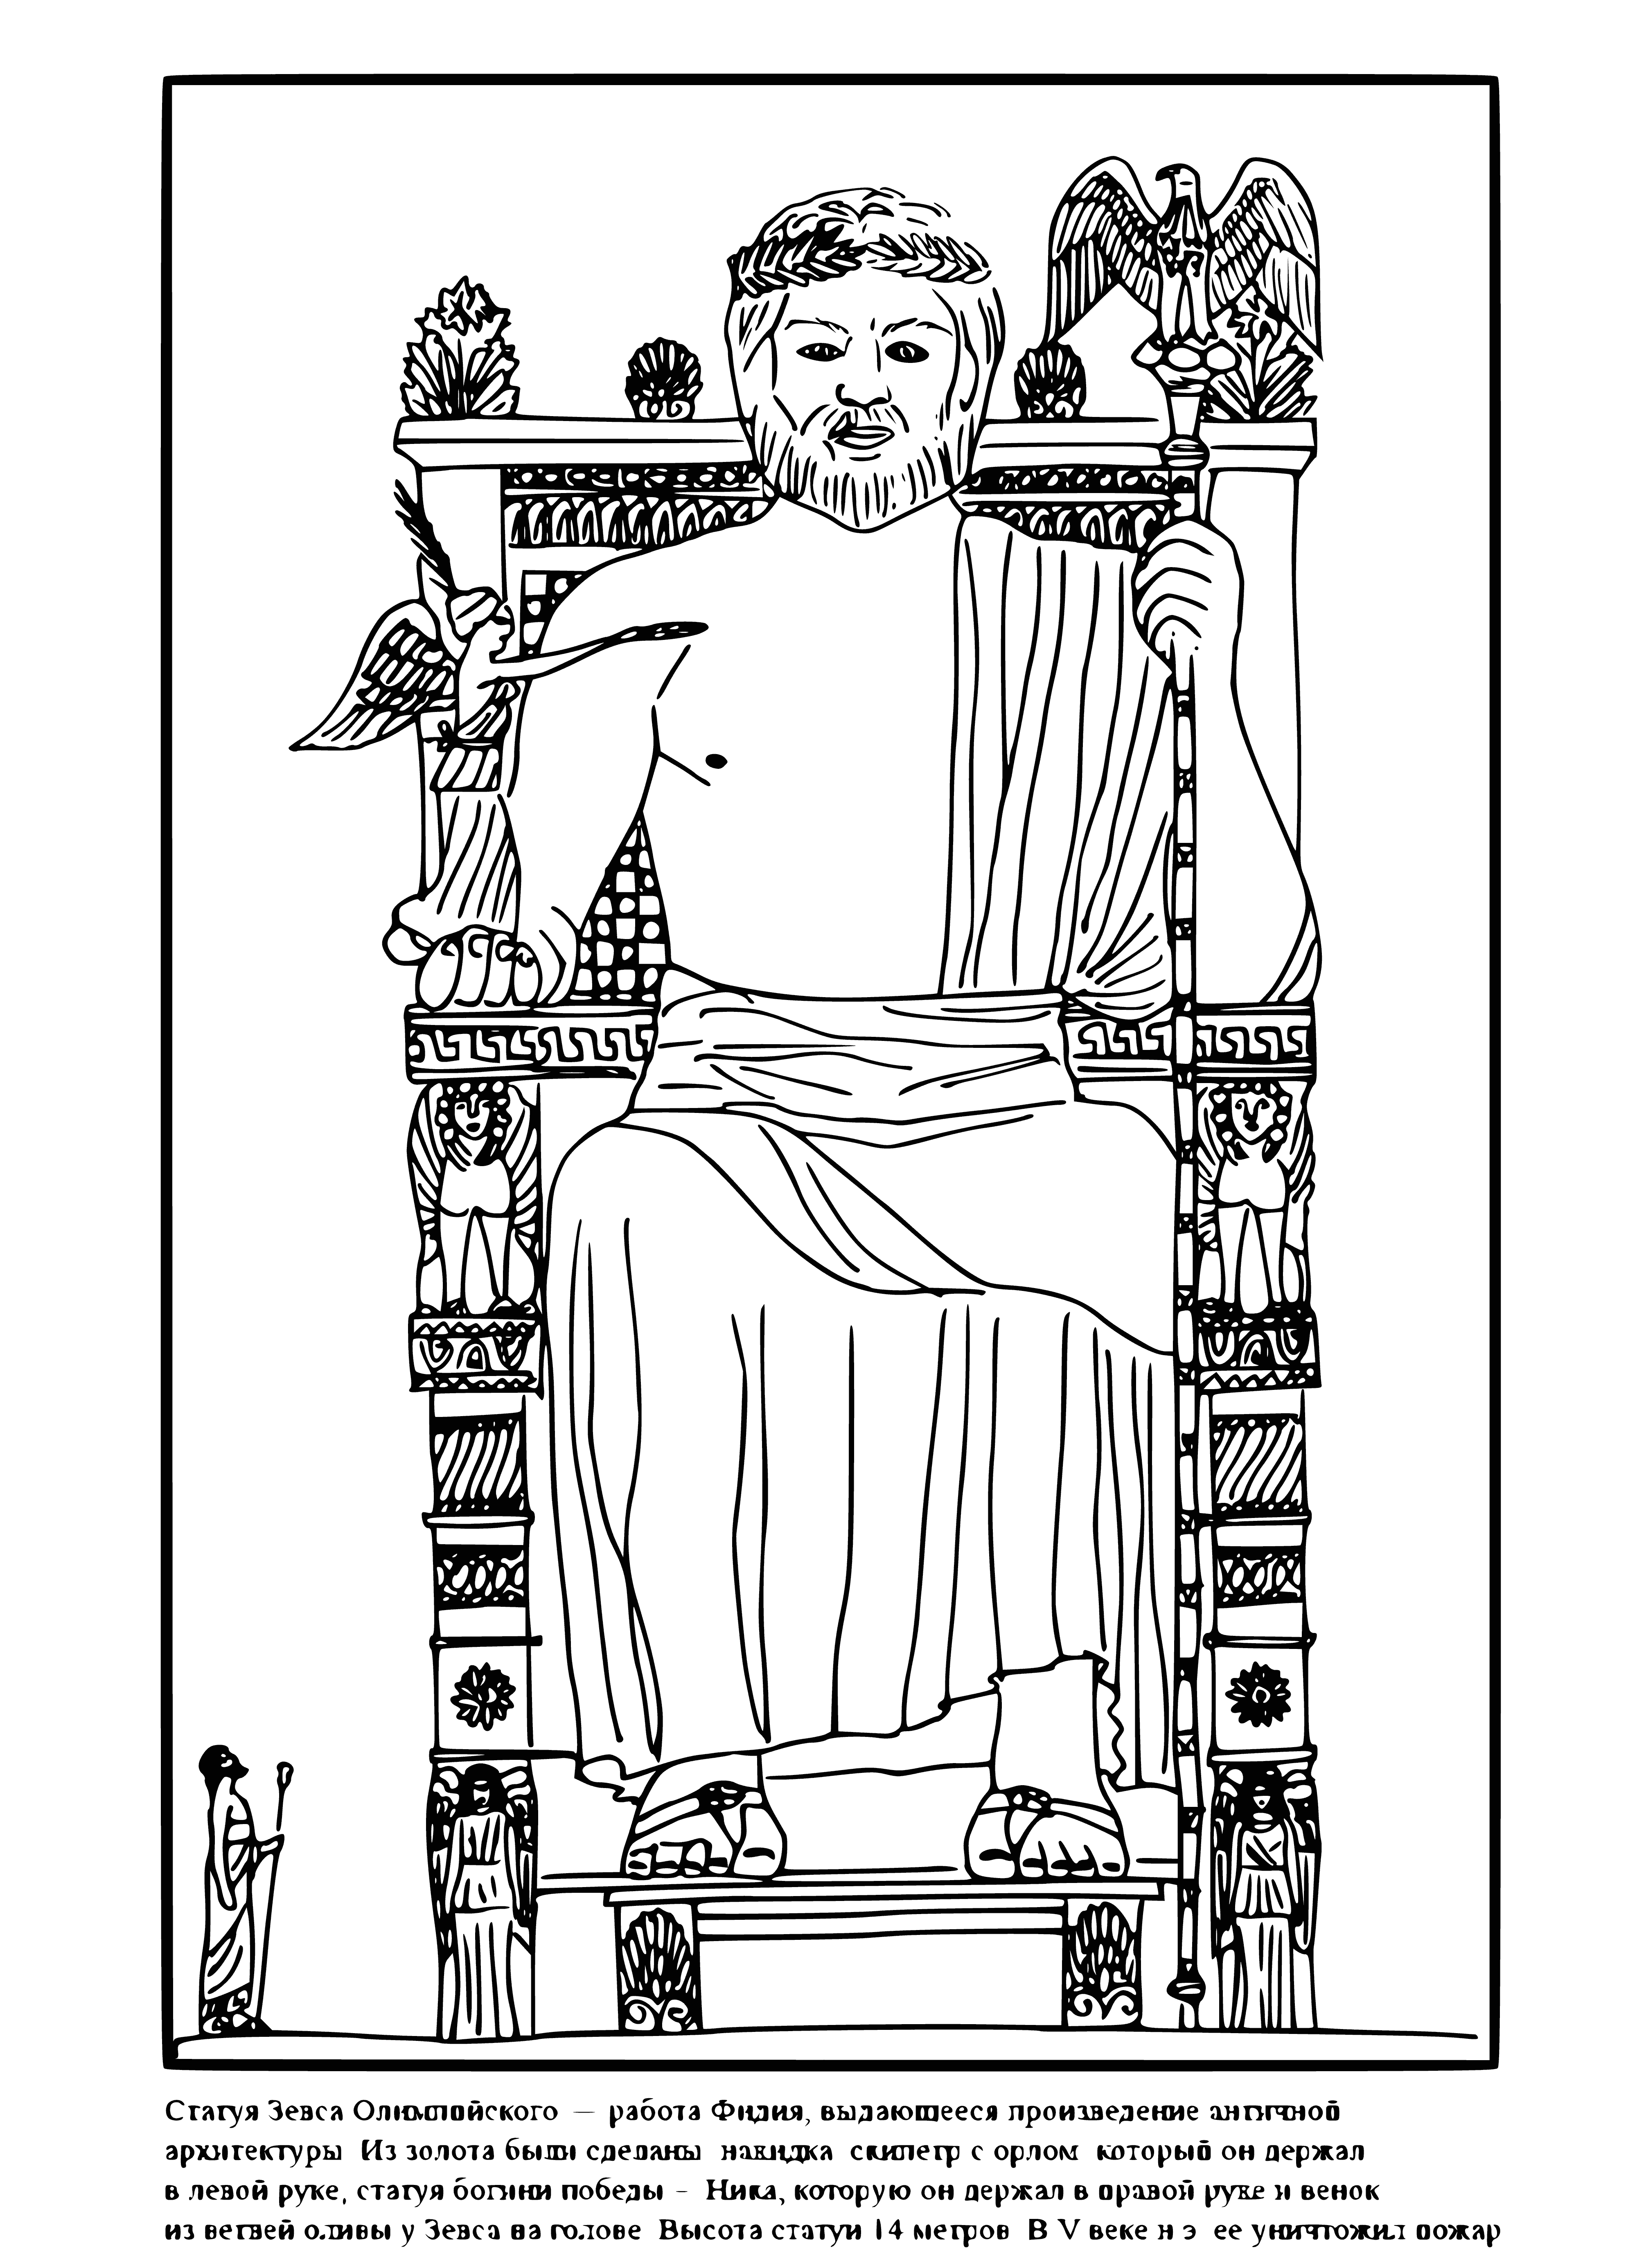 Standbeeld van Zeus inkleurbladsy